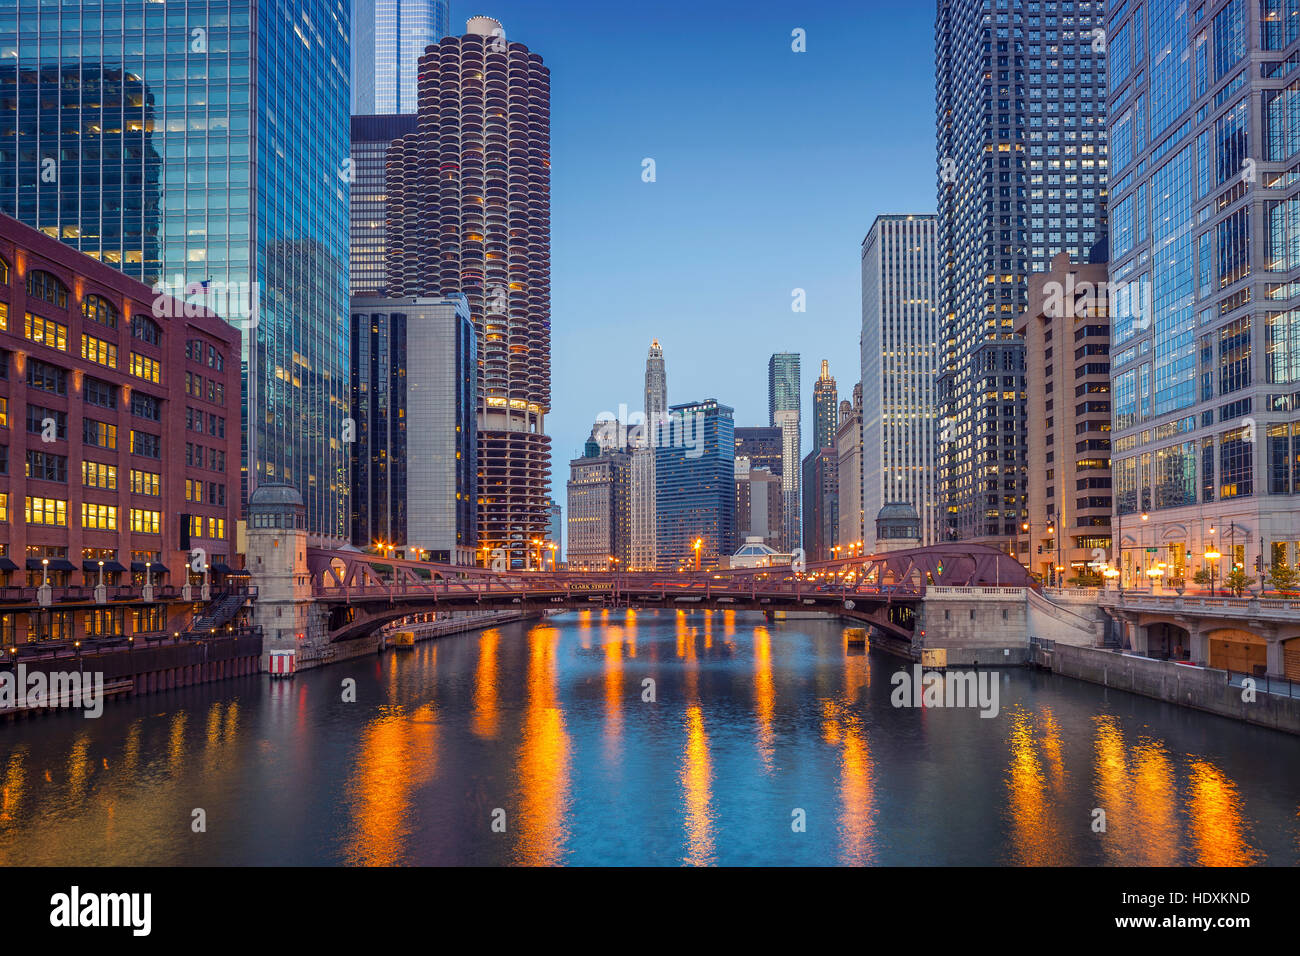 Downtown Chicago. Stadtbild Bild von Chicago downtown in der blauen Dämmerstunde. Stockfoto